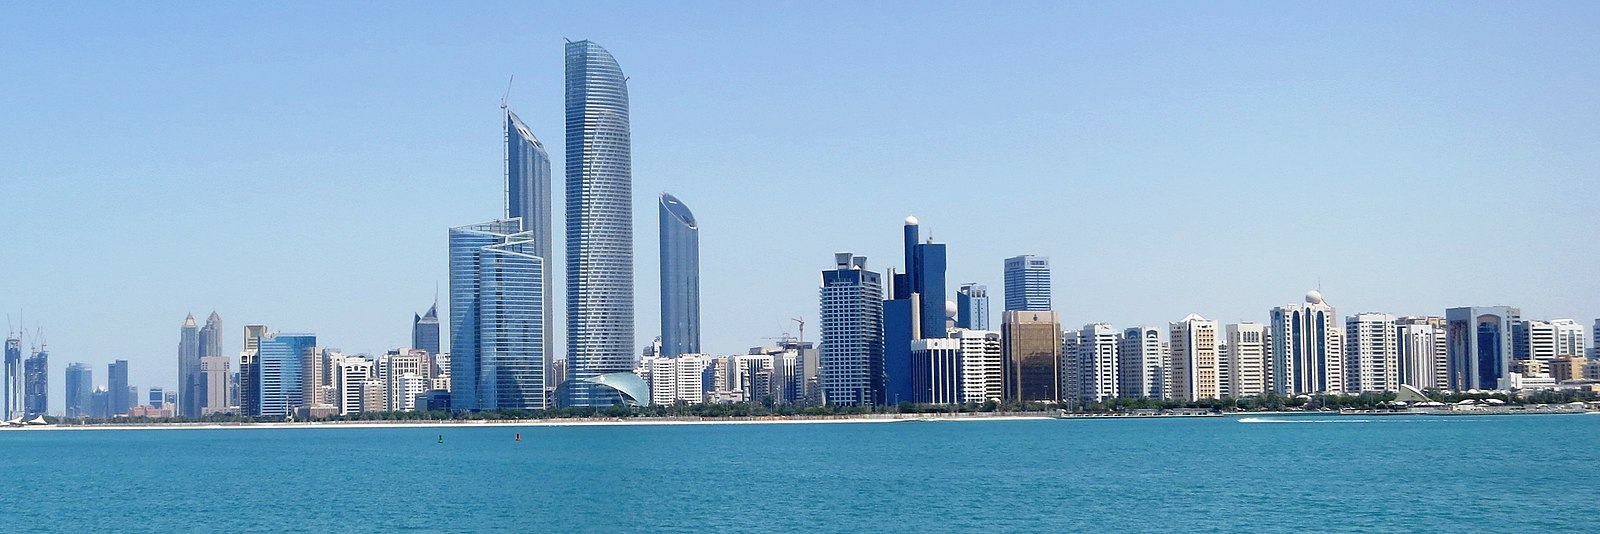 Abu Dhabi. Photo FritzDaCat